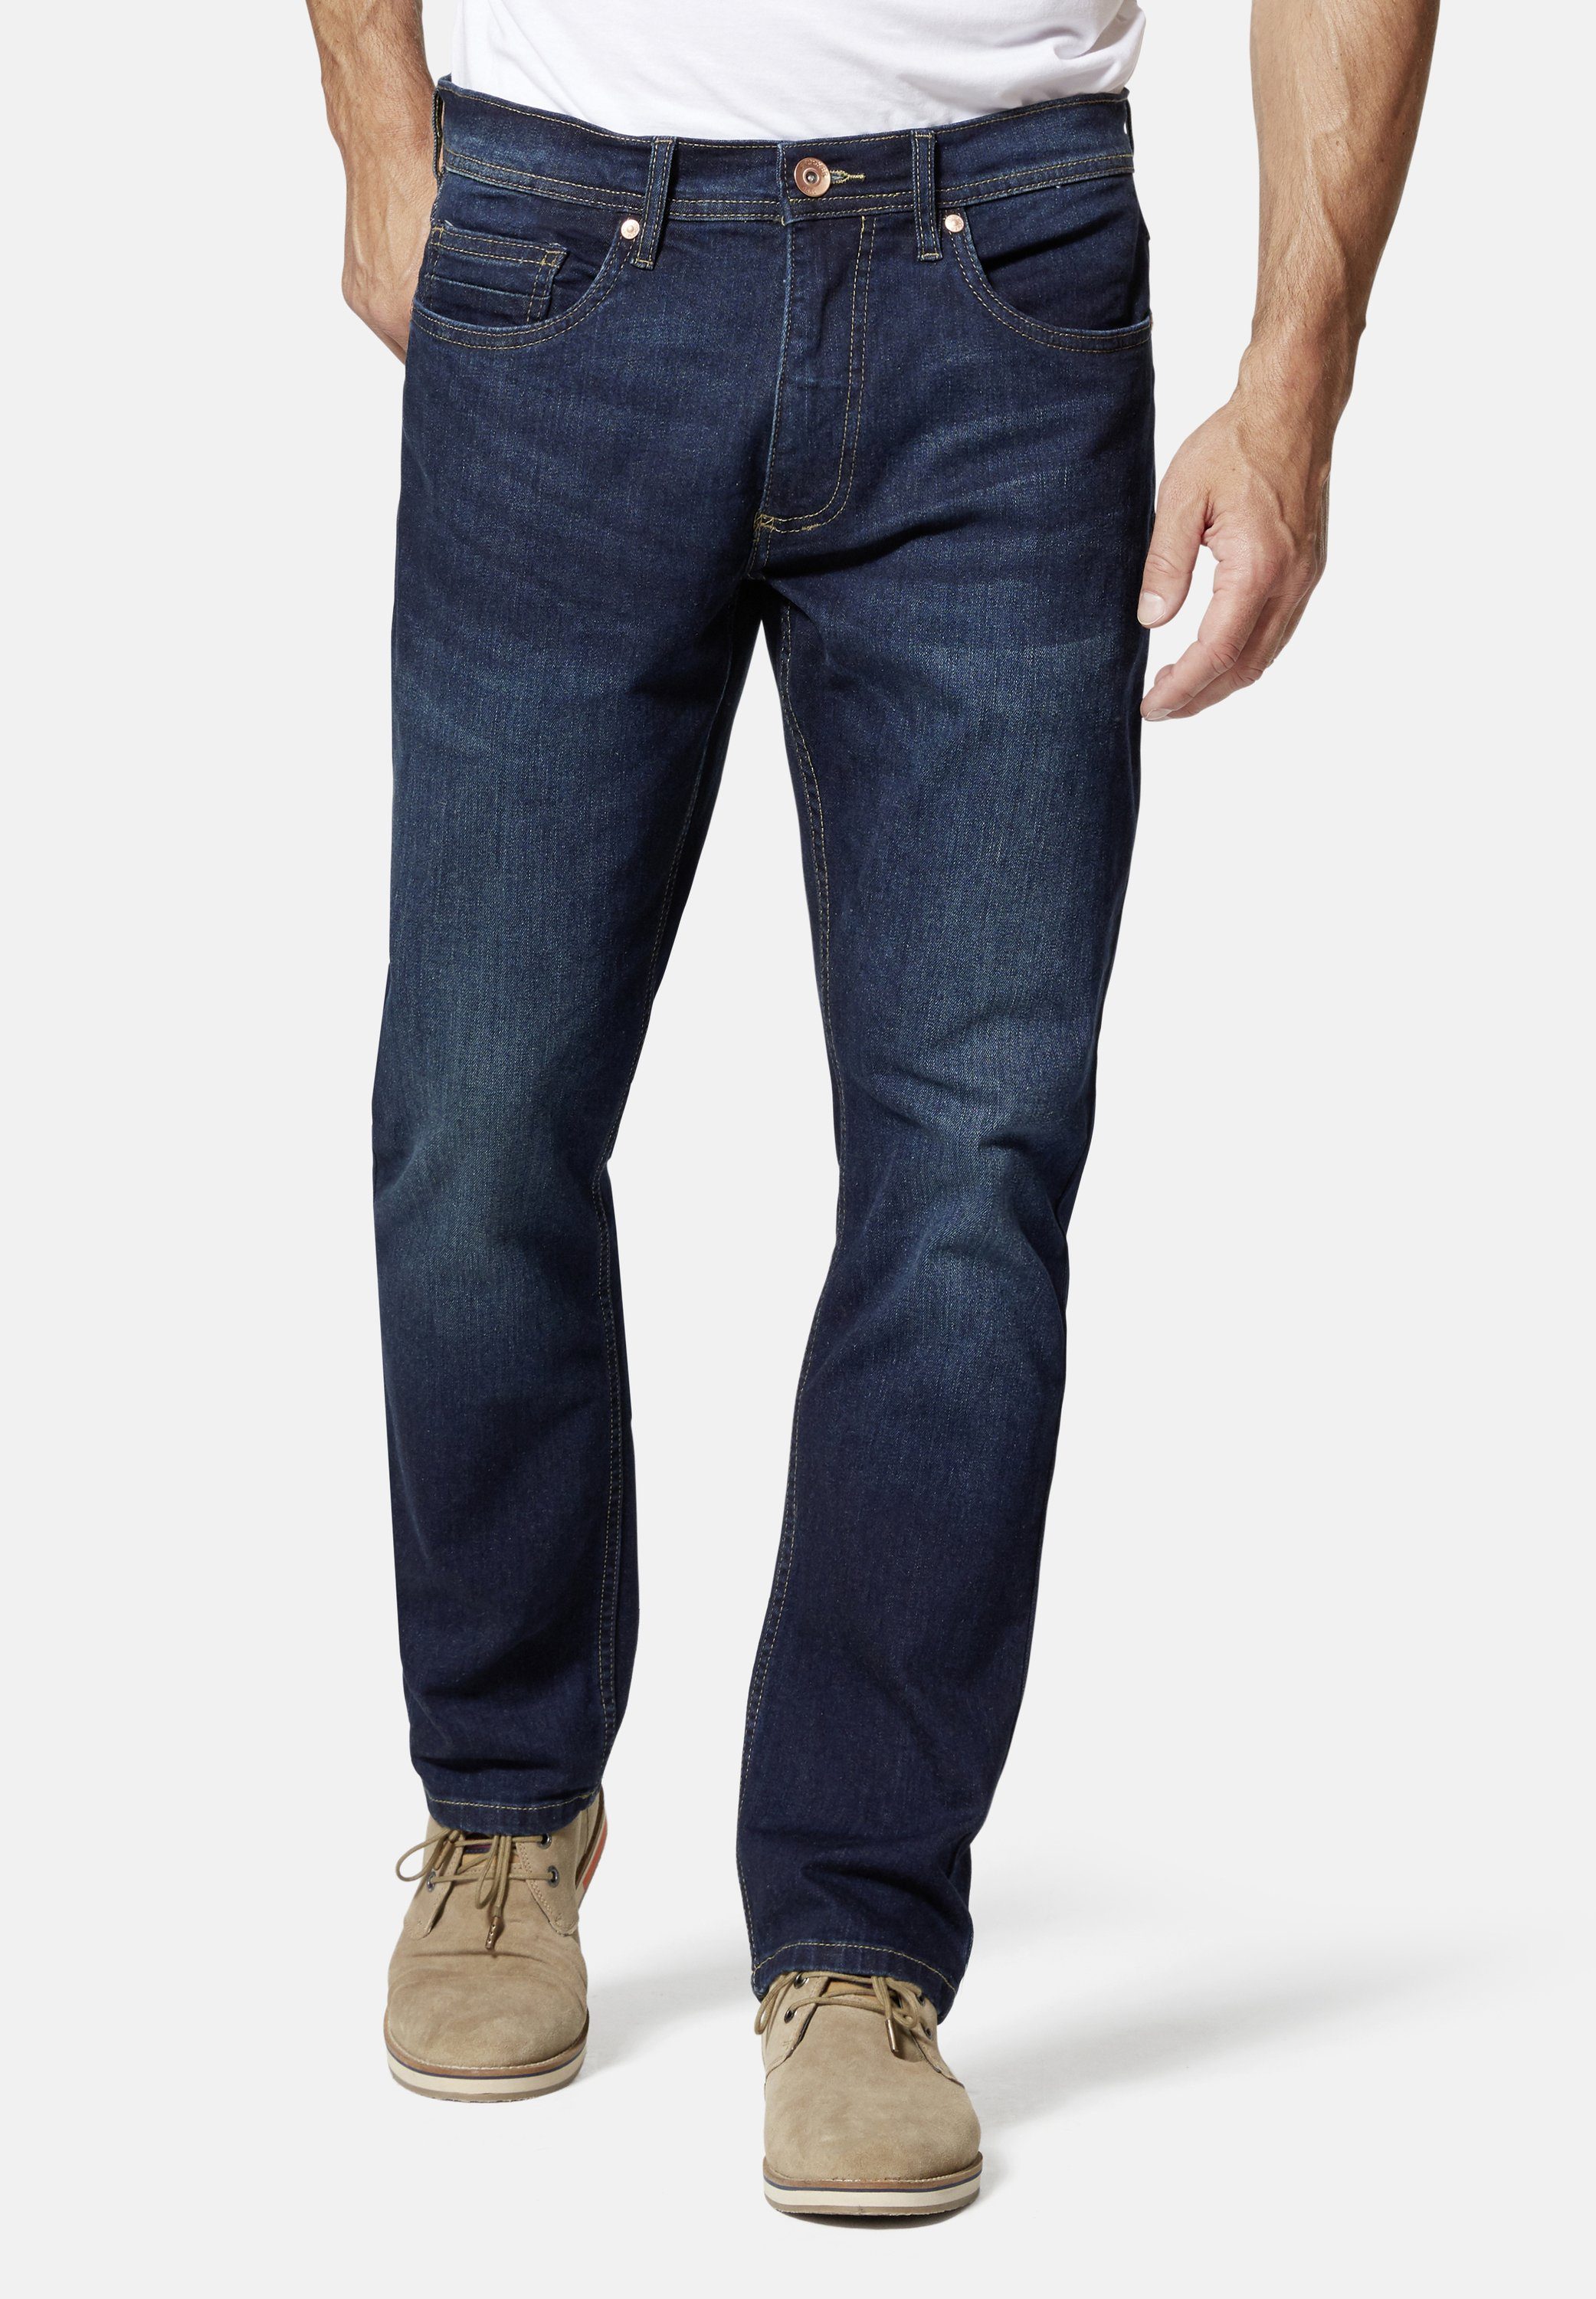 Stooker Men 5-Pocket-Jeans Glendale Denim Slim Straight Fit darkblue used | Stretchjeans